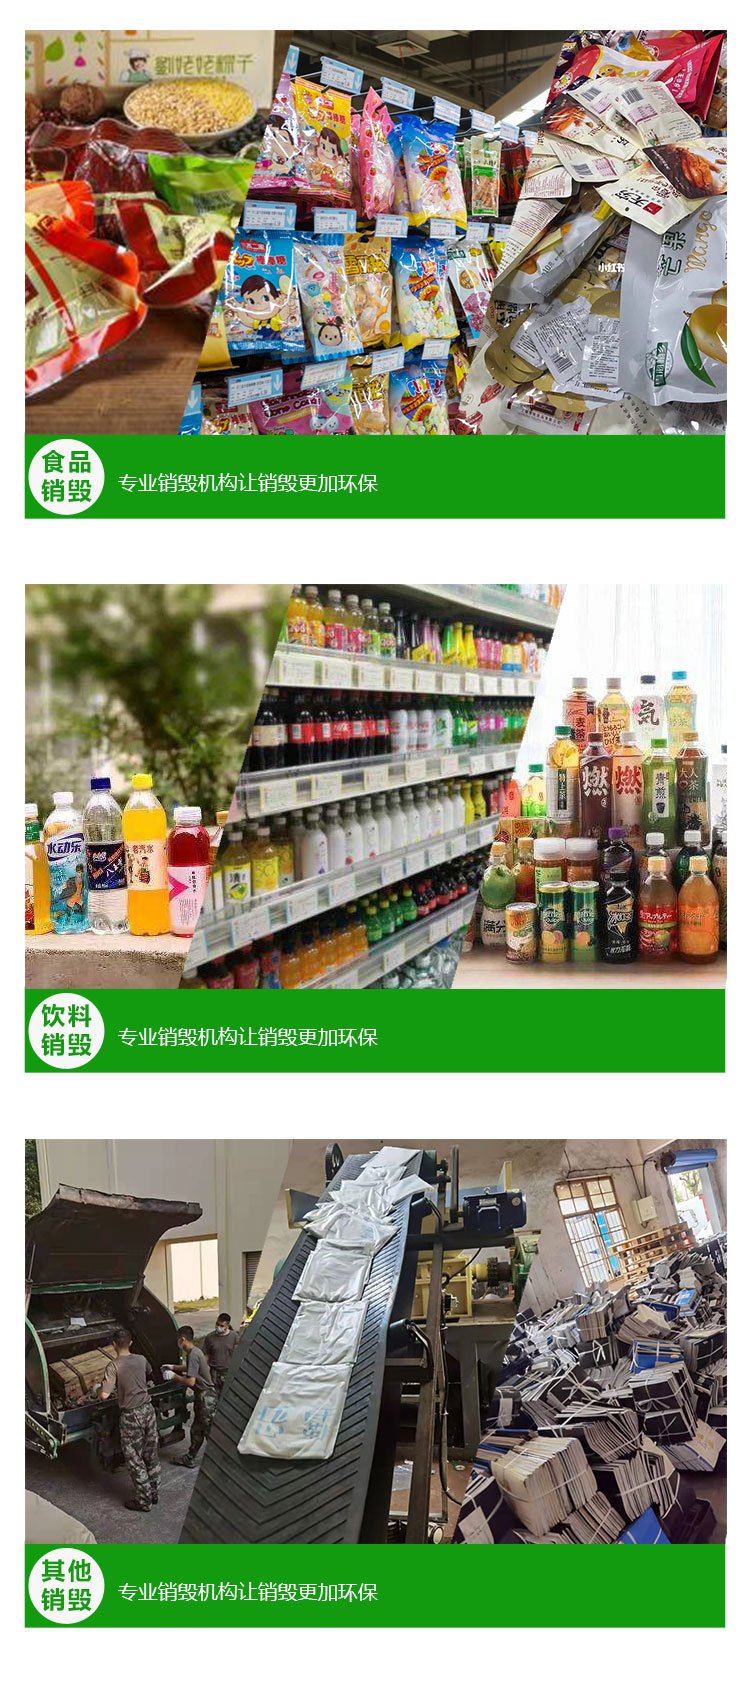 广州荔湾区假冒伪劣产品报废公司保密销毁中心